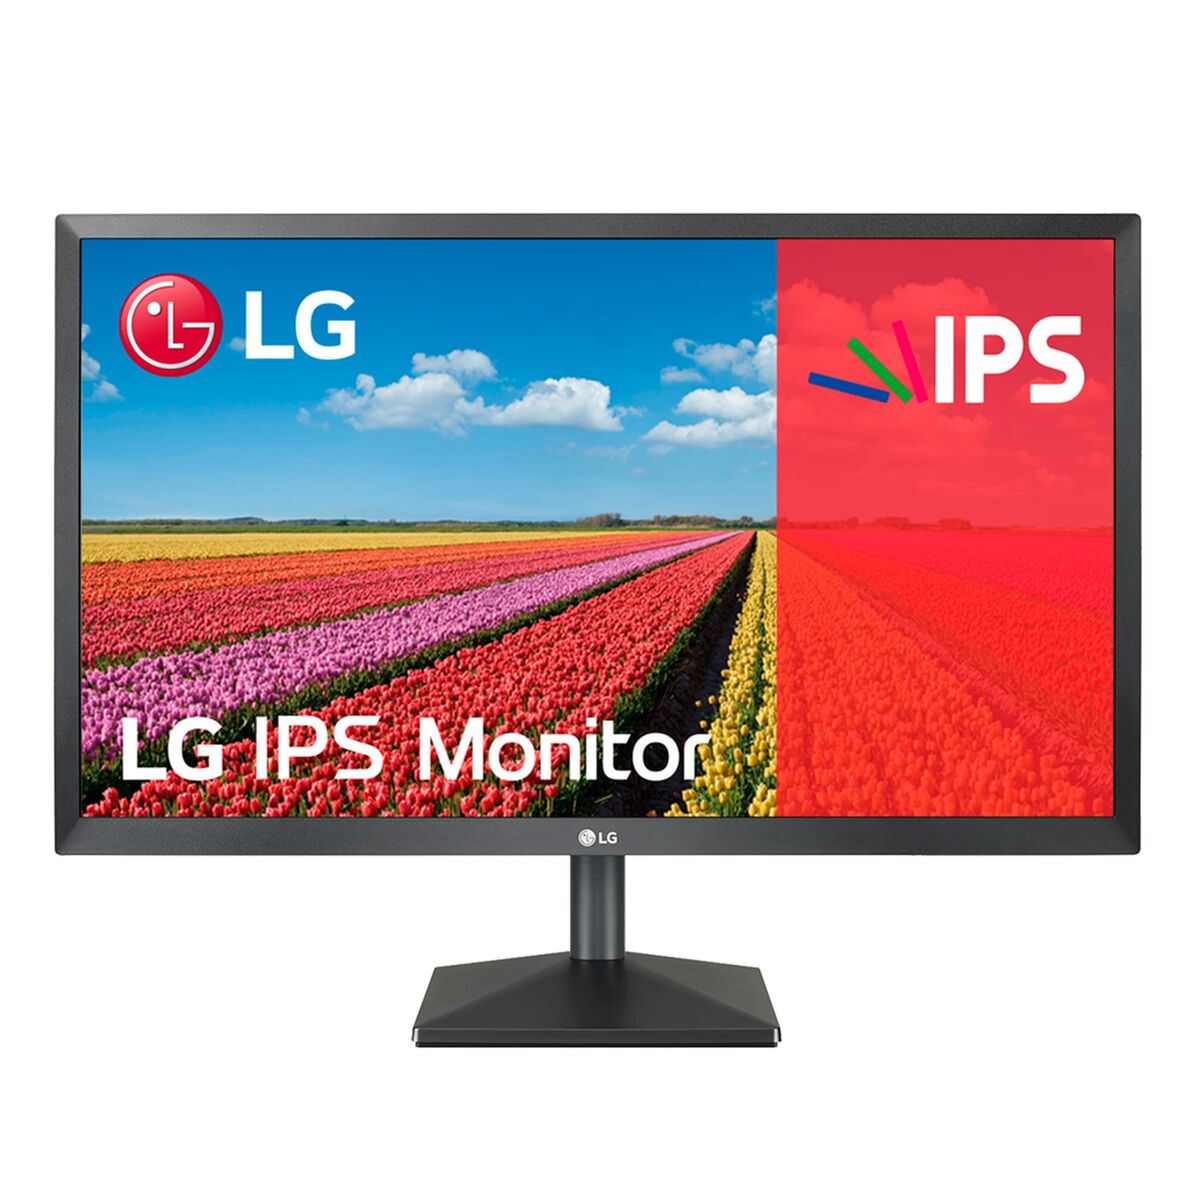 LG Monitor  Full HD 24 AMD FreeSync